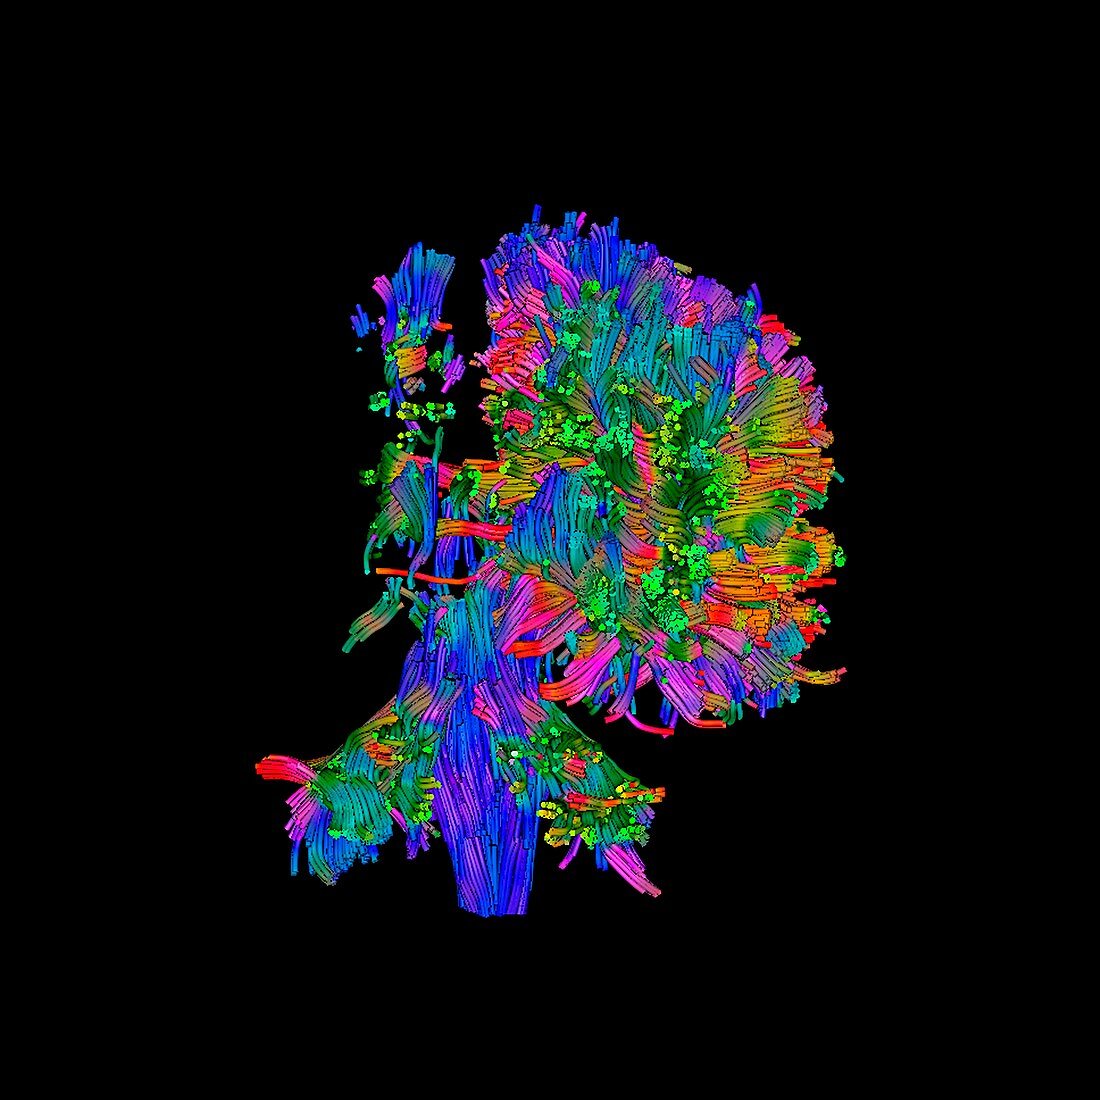 Cerebral palsy,DTI scan